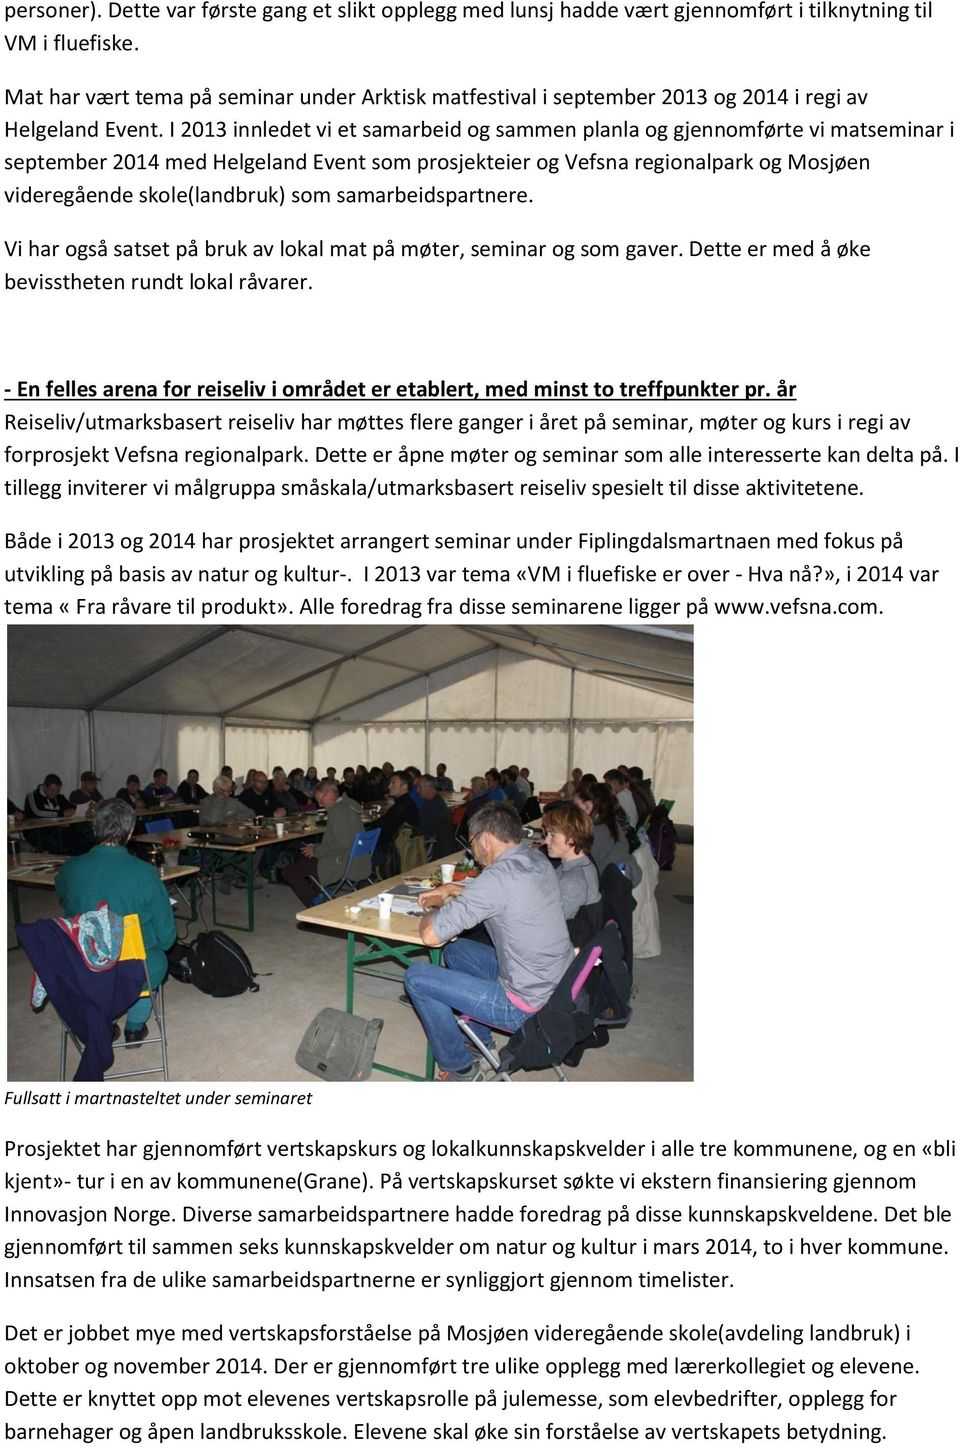 I 2013 innledet vi et samarbeid og sammen planla og gjennomførte vi matseminar i september 2014 med Helgeland Event som prosjekteier og Vefsna regionalpark og Mosjøen videregående skole(landbruk) som